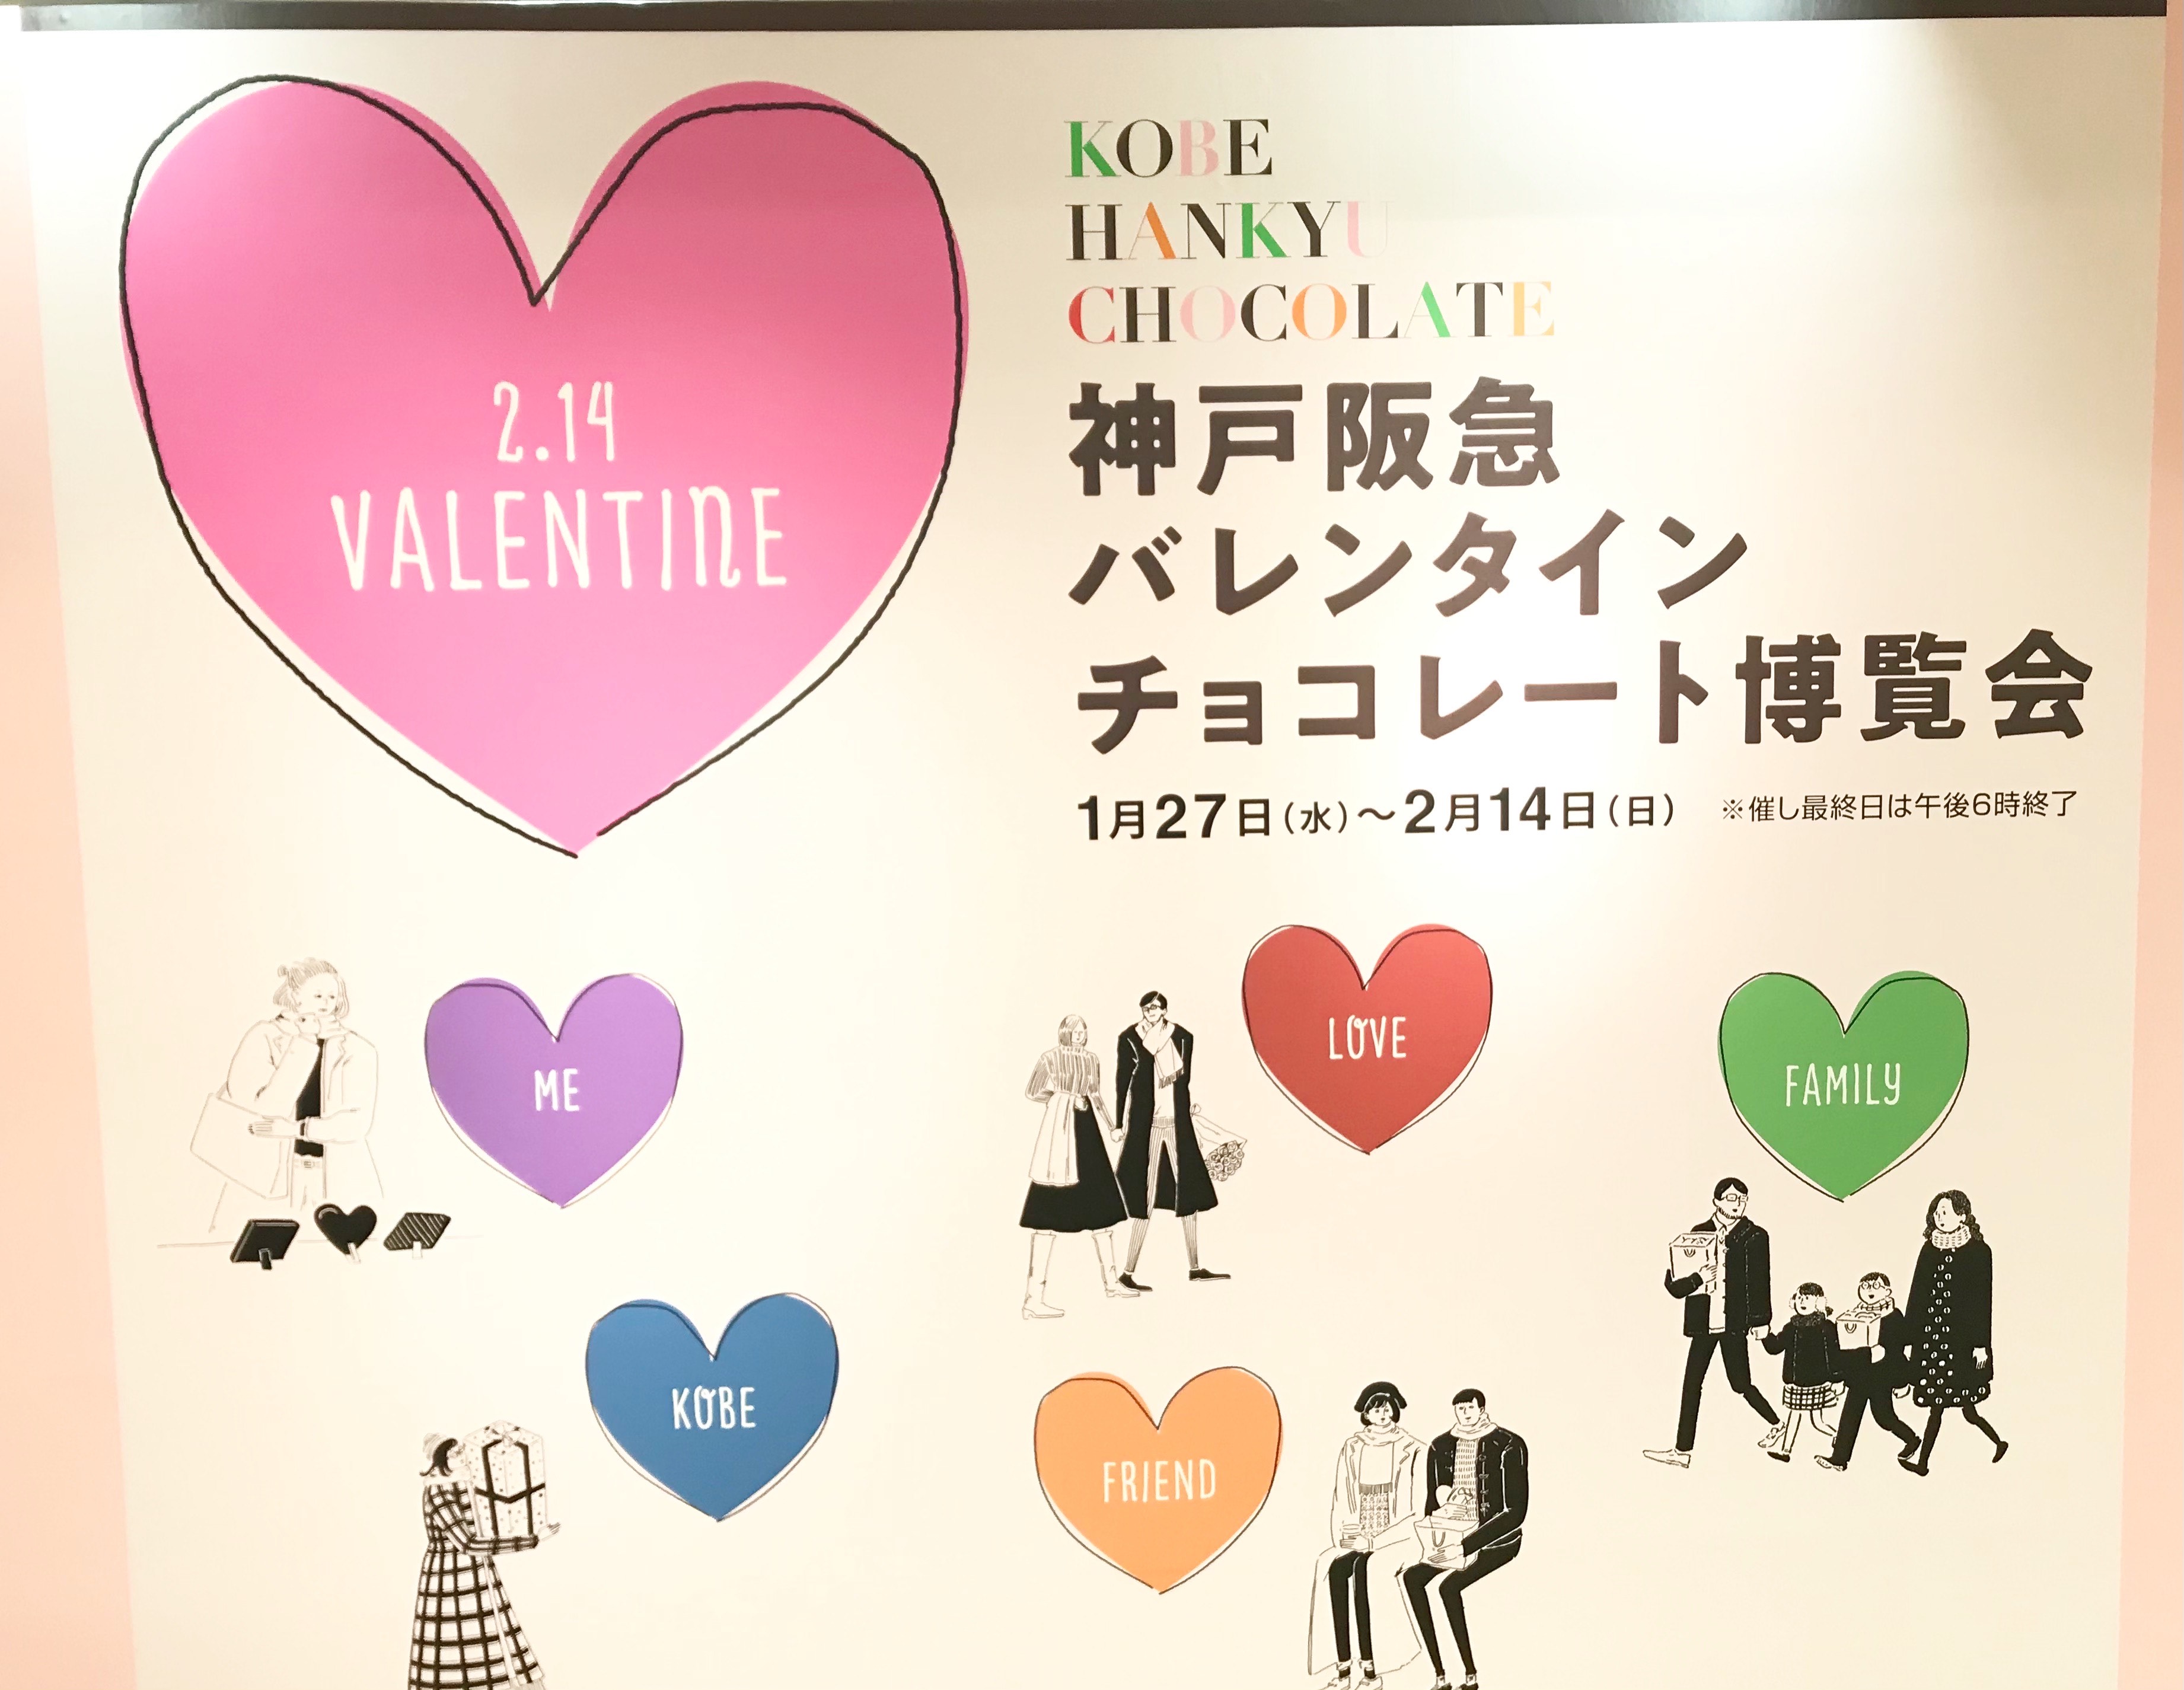 神戸阪急バレンタイン チョコレート博覧会 開催中 今年だけの極上チョコ大集合 ラジトピ ラジオ関西トピックス